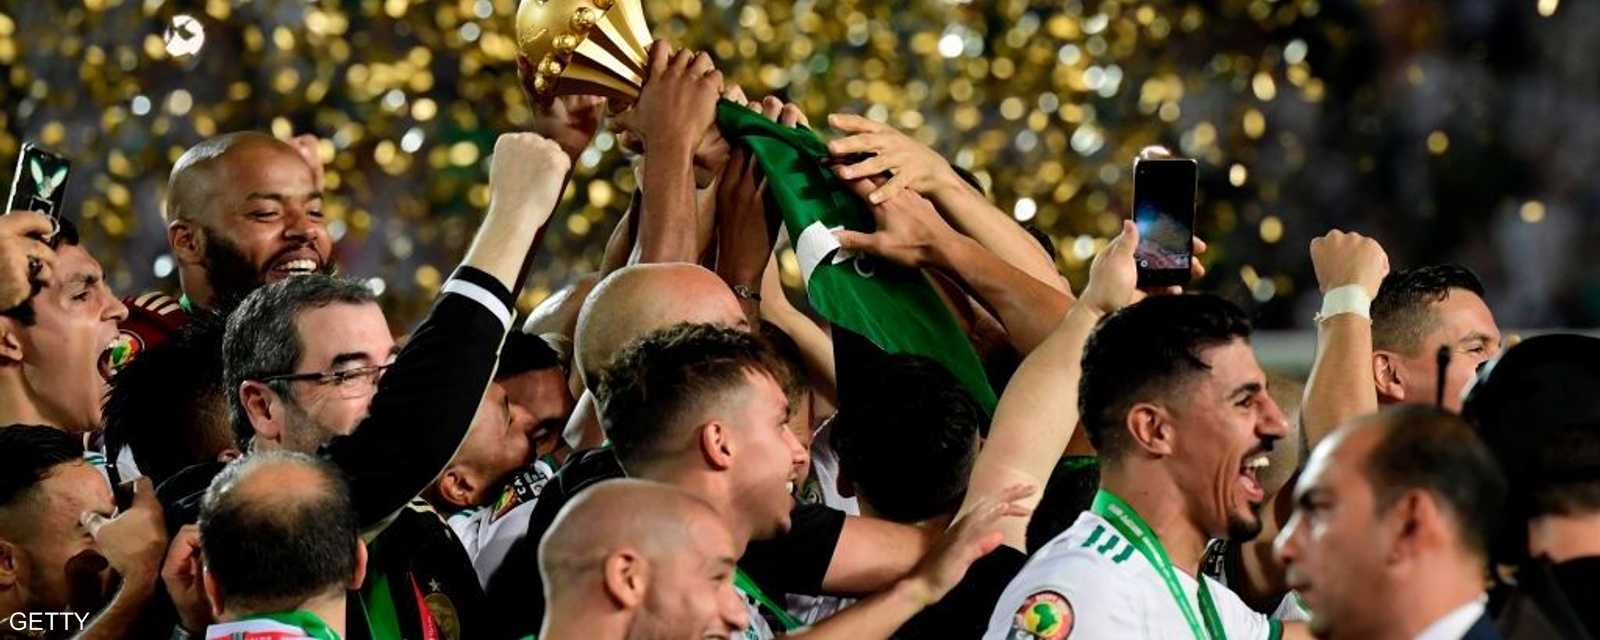 نجوم الجزائر يرفعون الكأس المستحقة بعد غياب 29 عاما